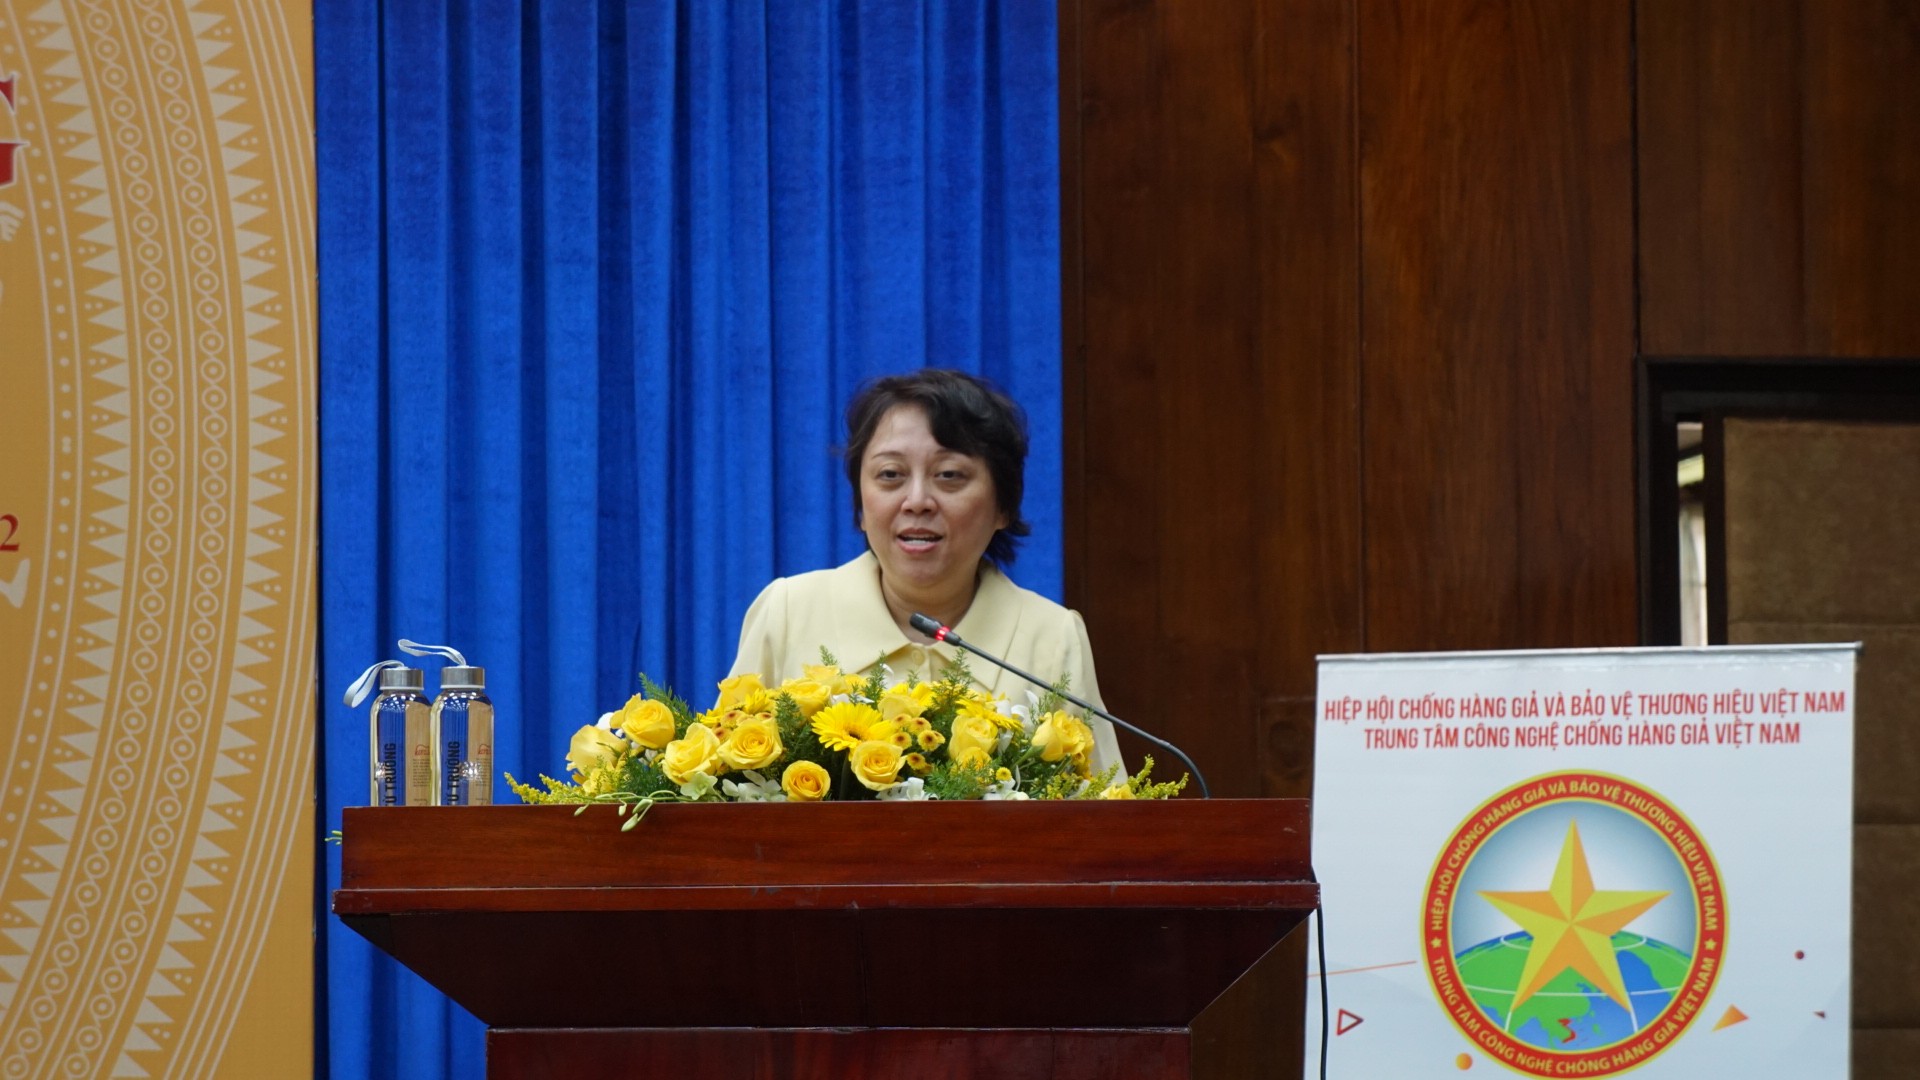 Bà Phạm Khánh Phong Lan, Trưởng ban Quản lý an toàn thực phẩm Tp.HCM phát biểu tại hội thảo.